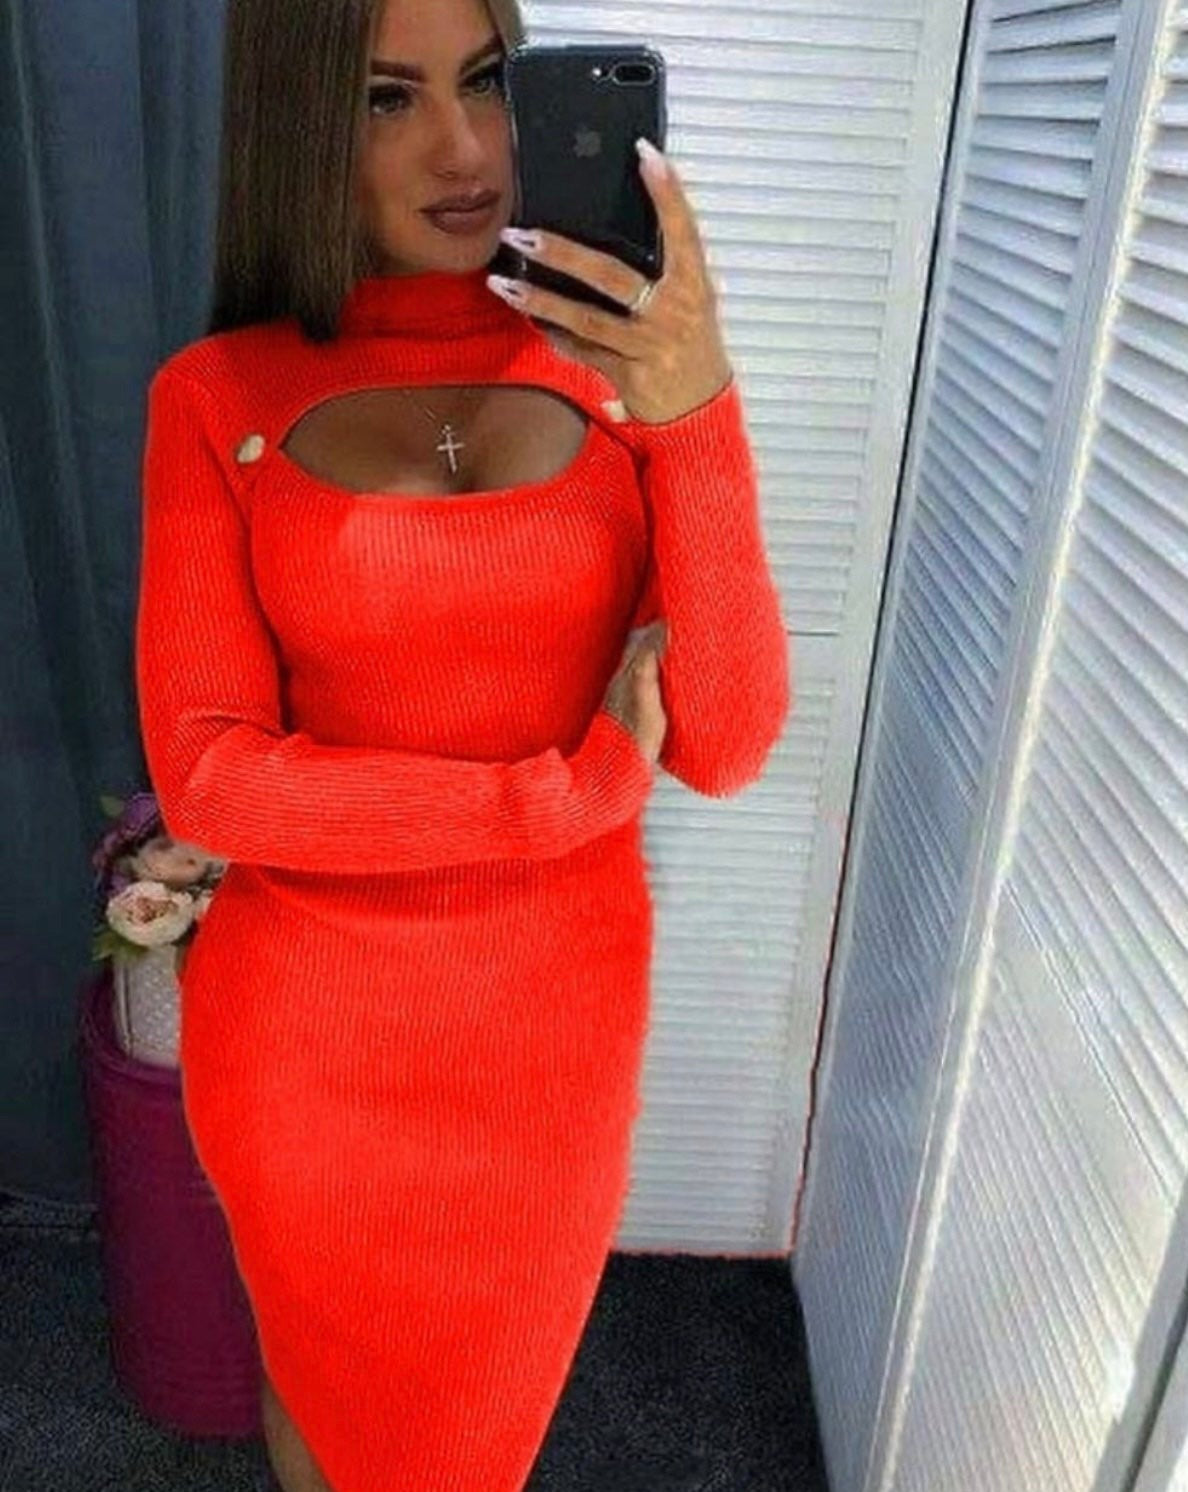 Дамска рокля VERITA  https://bvseductive.com/products/дамска-рокля-verita  95% полиестер 5% еластан оранжева рипсена рокля&nbsp; със секси деколте,поло яка и копчета практично предложение за елегантна Ви визия